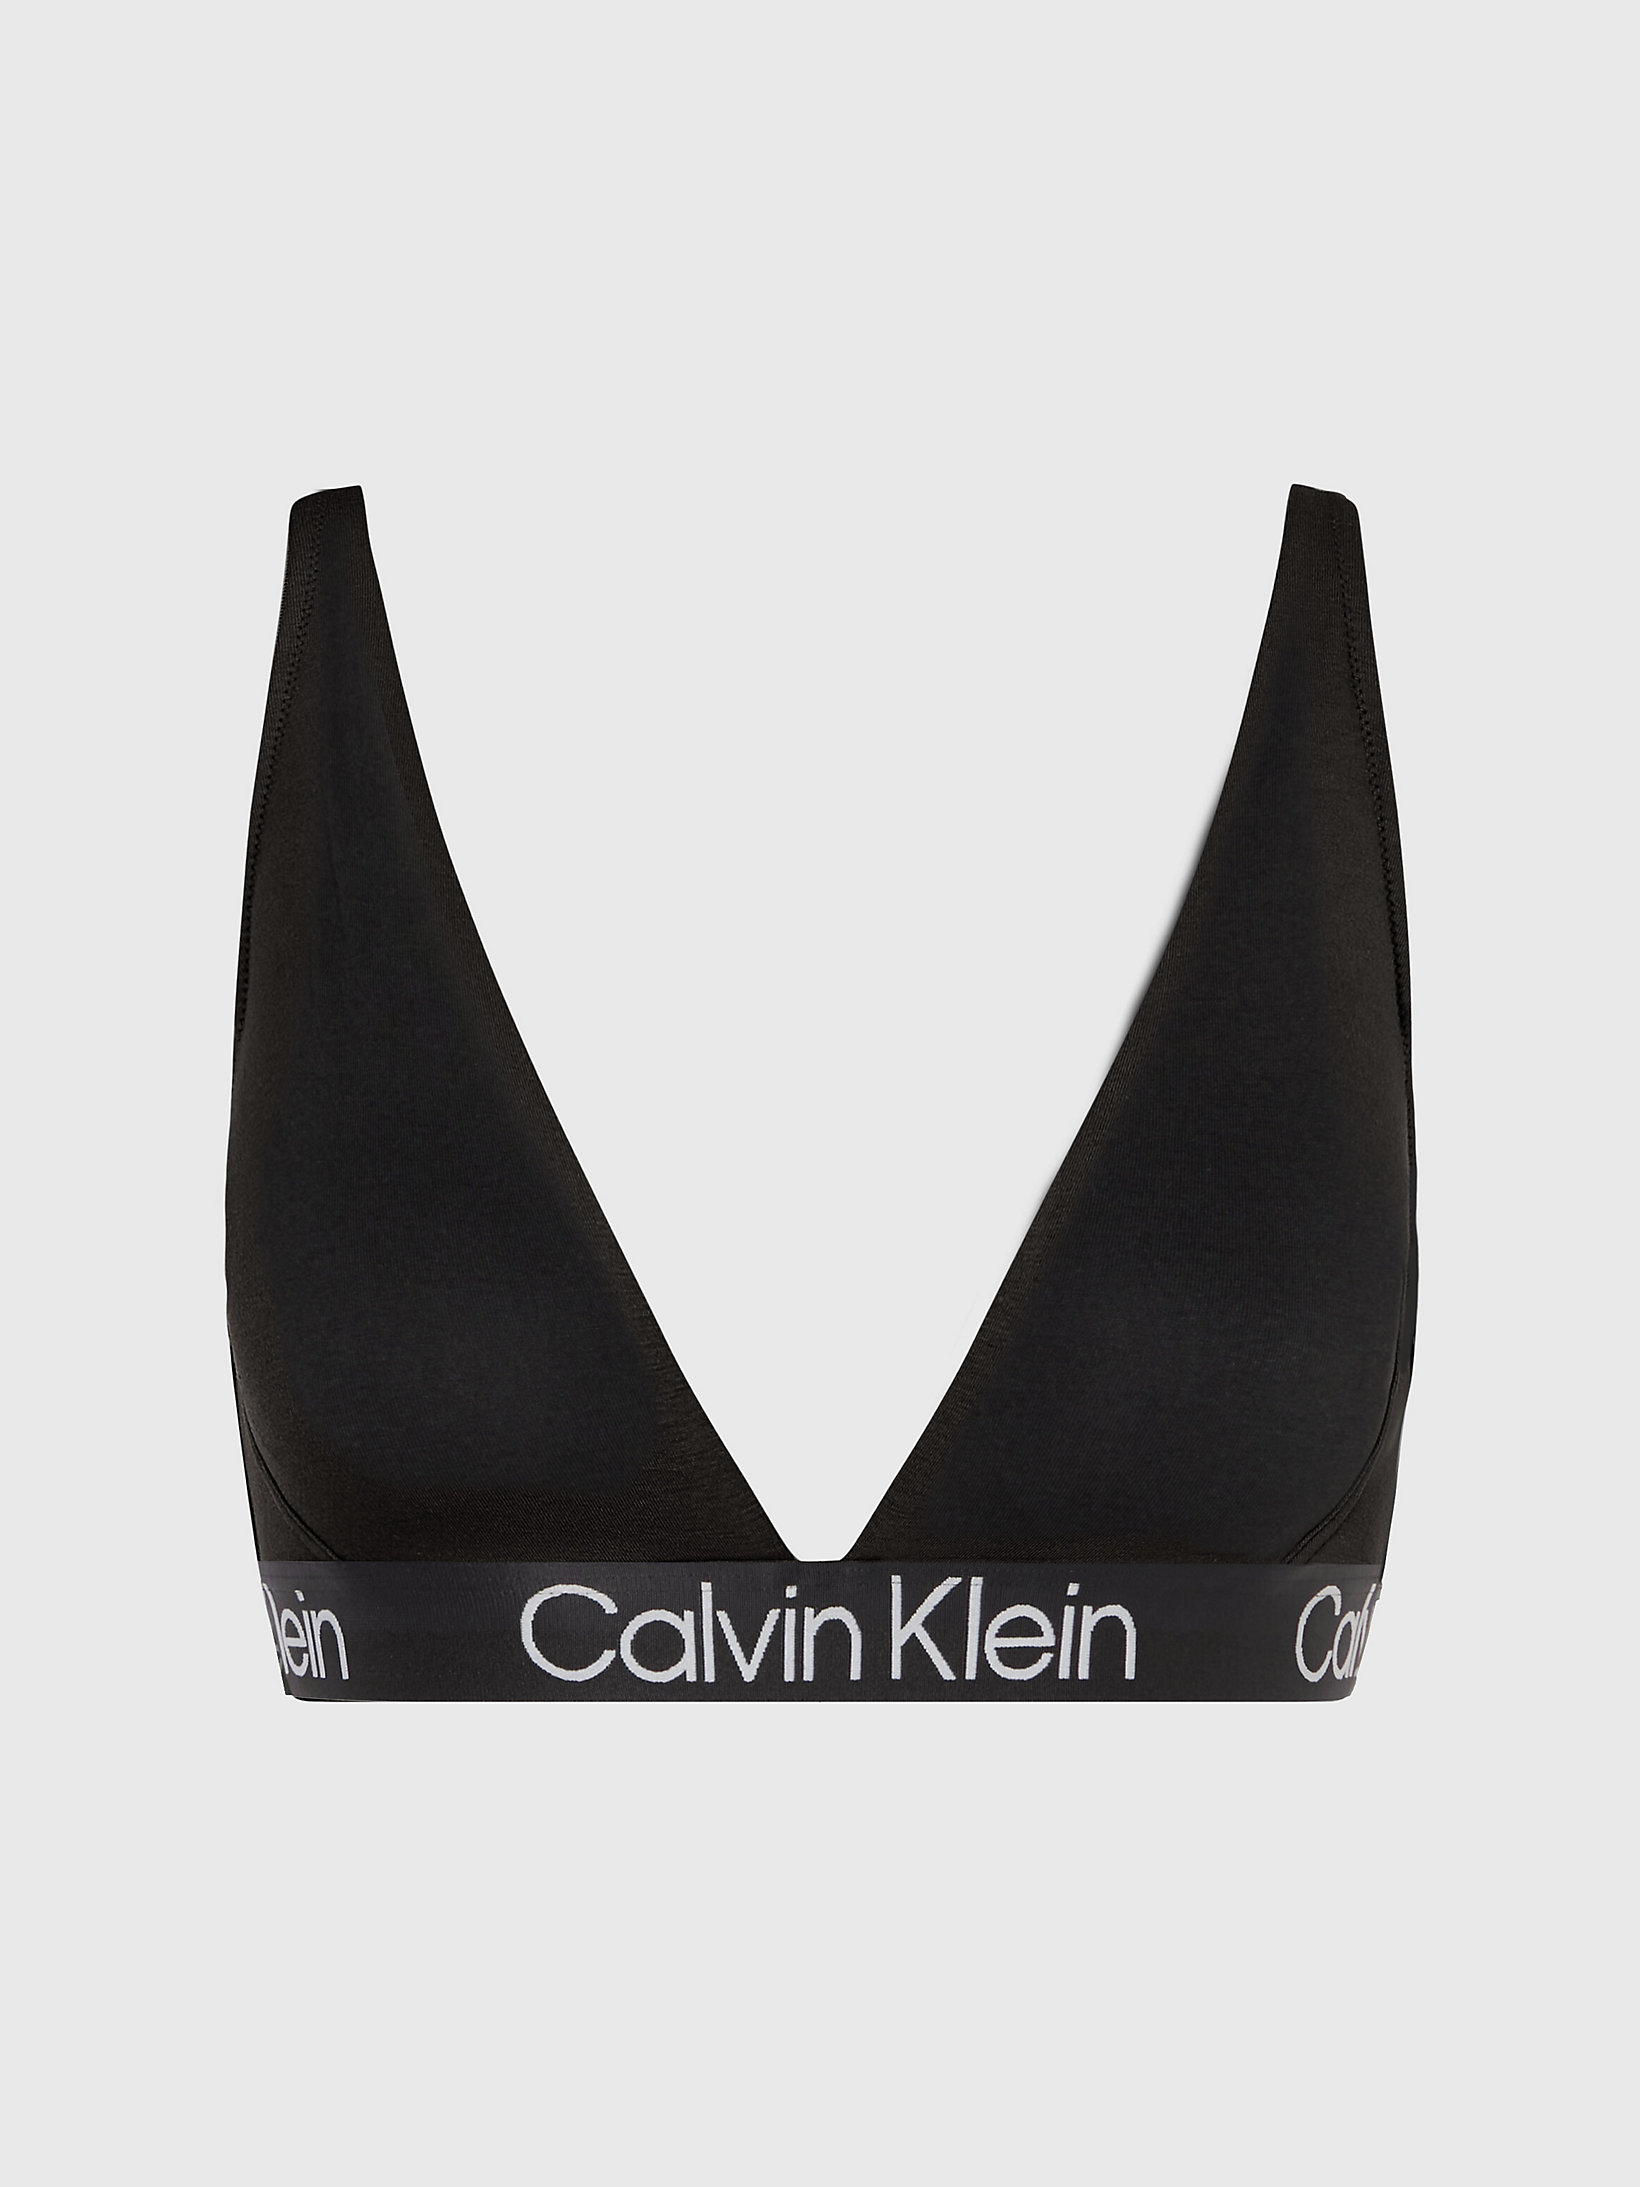 Black Triangle Bra - Modern Structure undefined women Calvin Klein